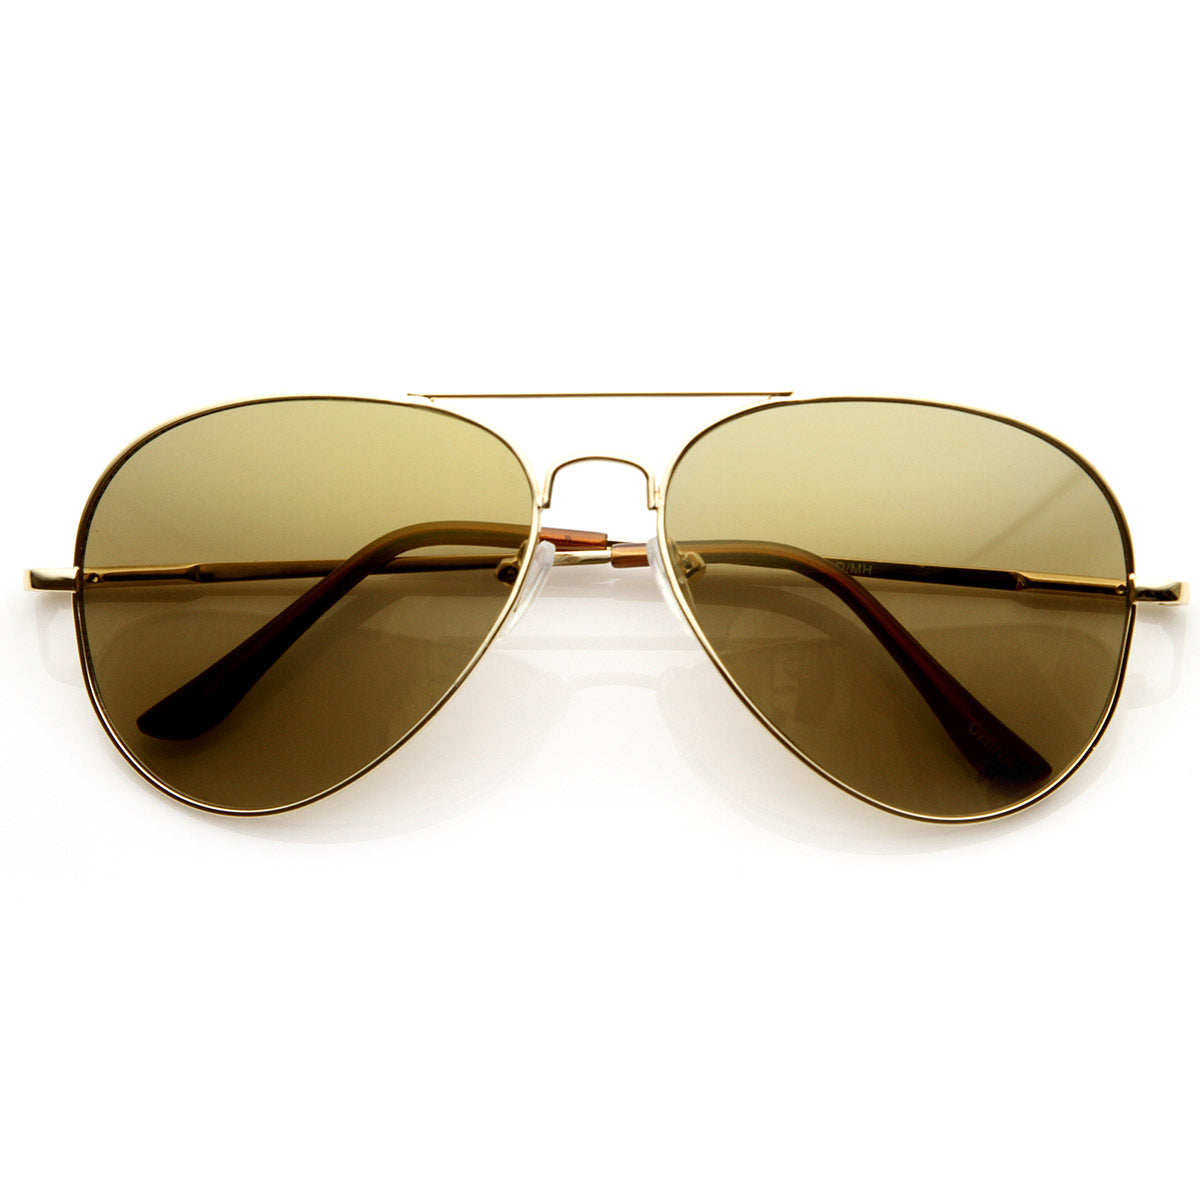 AISLIN® Toughened Glass Aviator Sunglasses for Men & Women (Medium |  AS-3025) (Gun Frame | G-15 (Dark Green) Lenses) : Amazon.in: Fashion